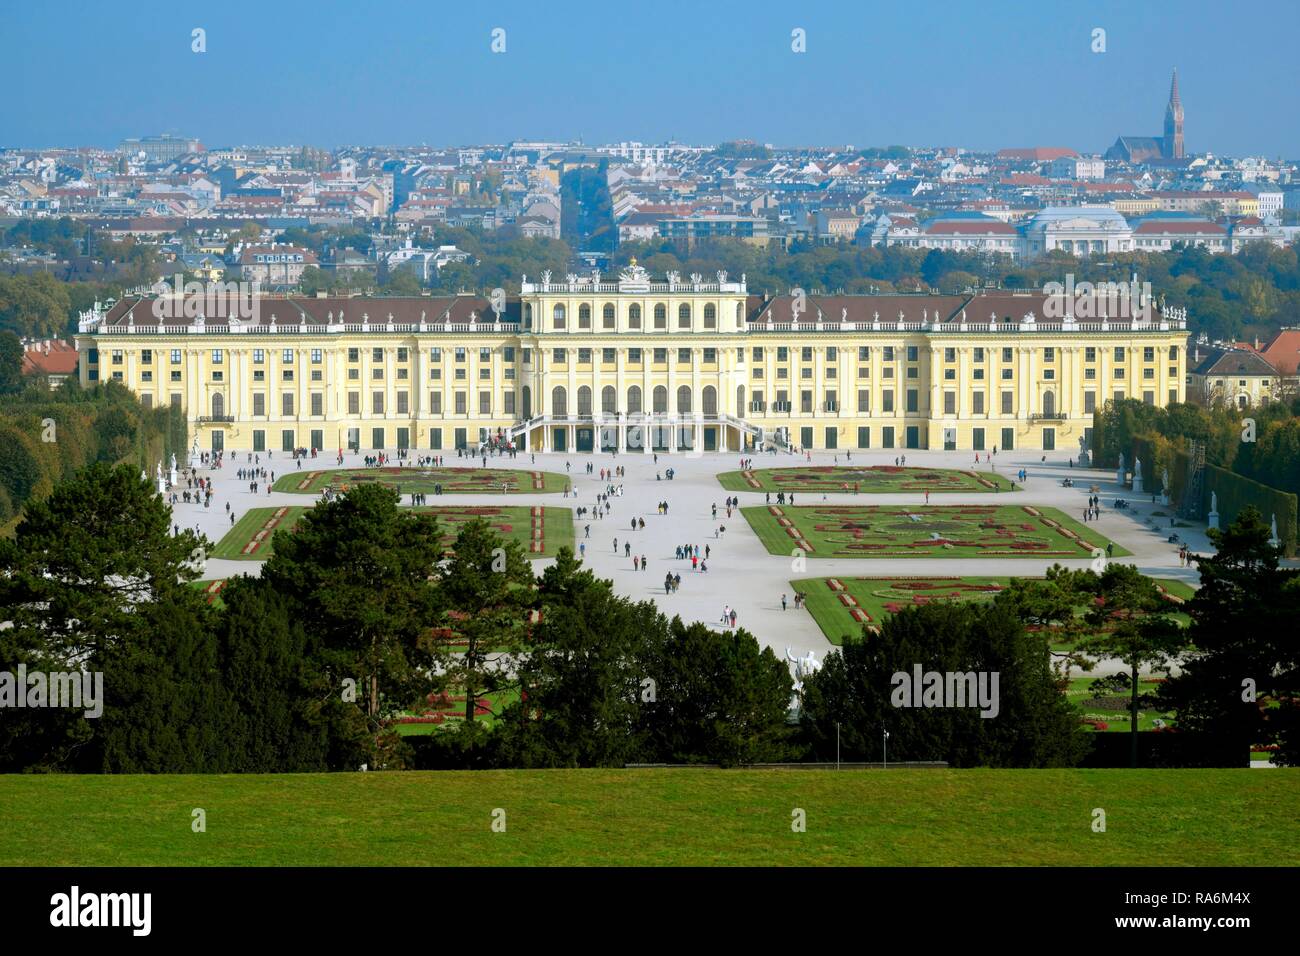 View from the Gloriette to Schönbrunn Palace, Vienna, Austria Stock Photo